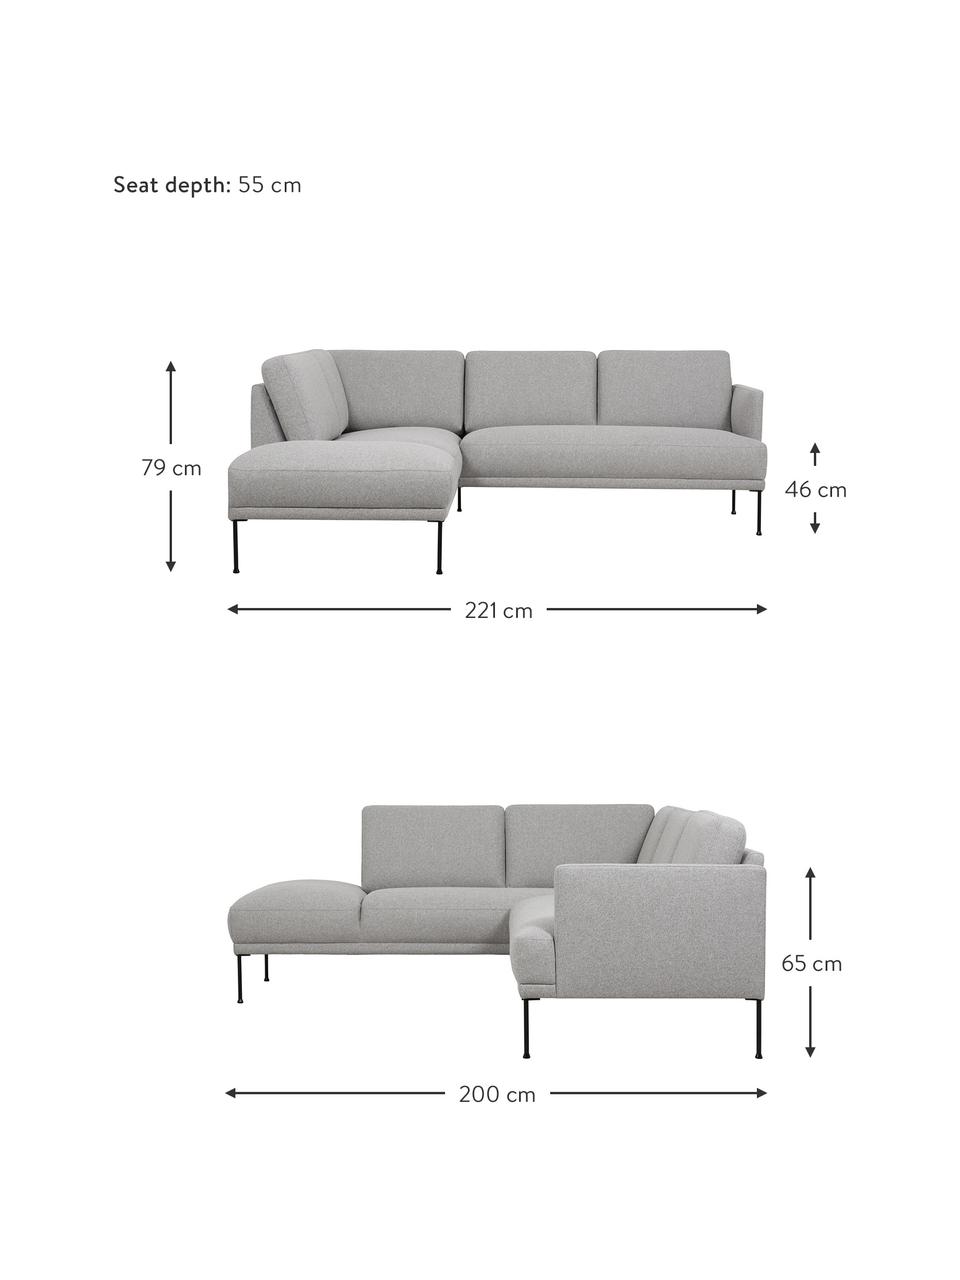 Sofa narożna z metalowymi nogami Fluente, Tapicerka: 80% poliester, 20% ramia , Nogi: metal malowany proszkowo, Jasny szary, S 221 x G 200 cm